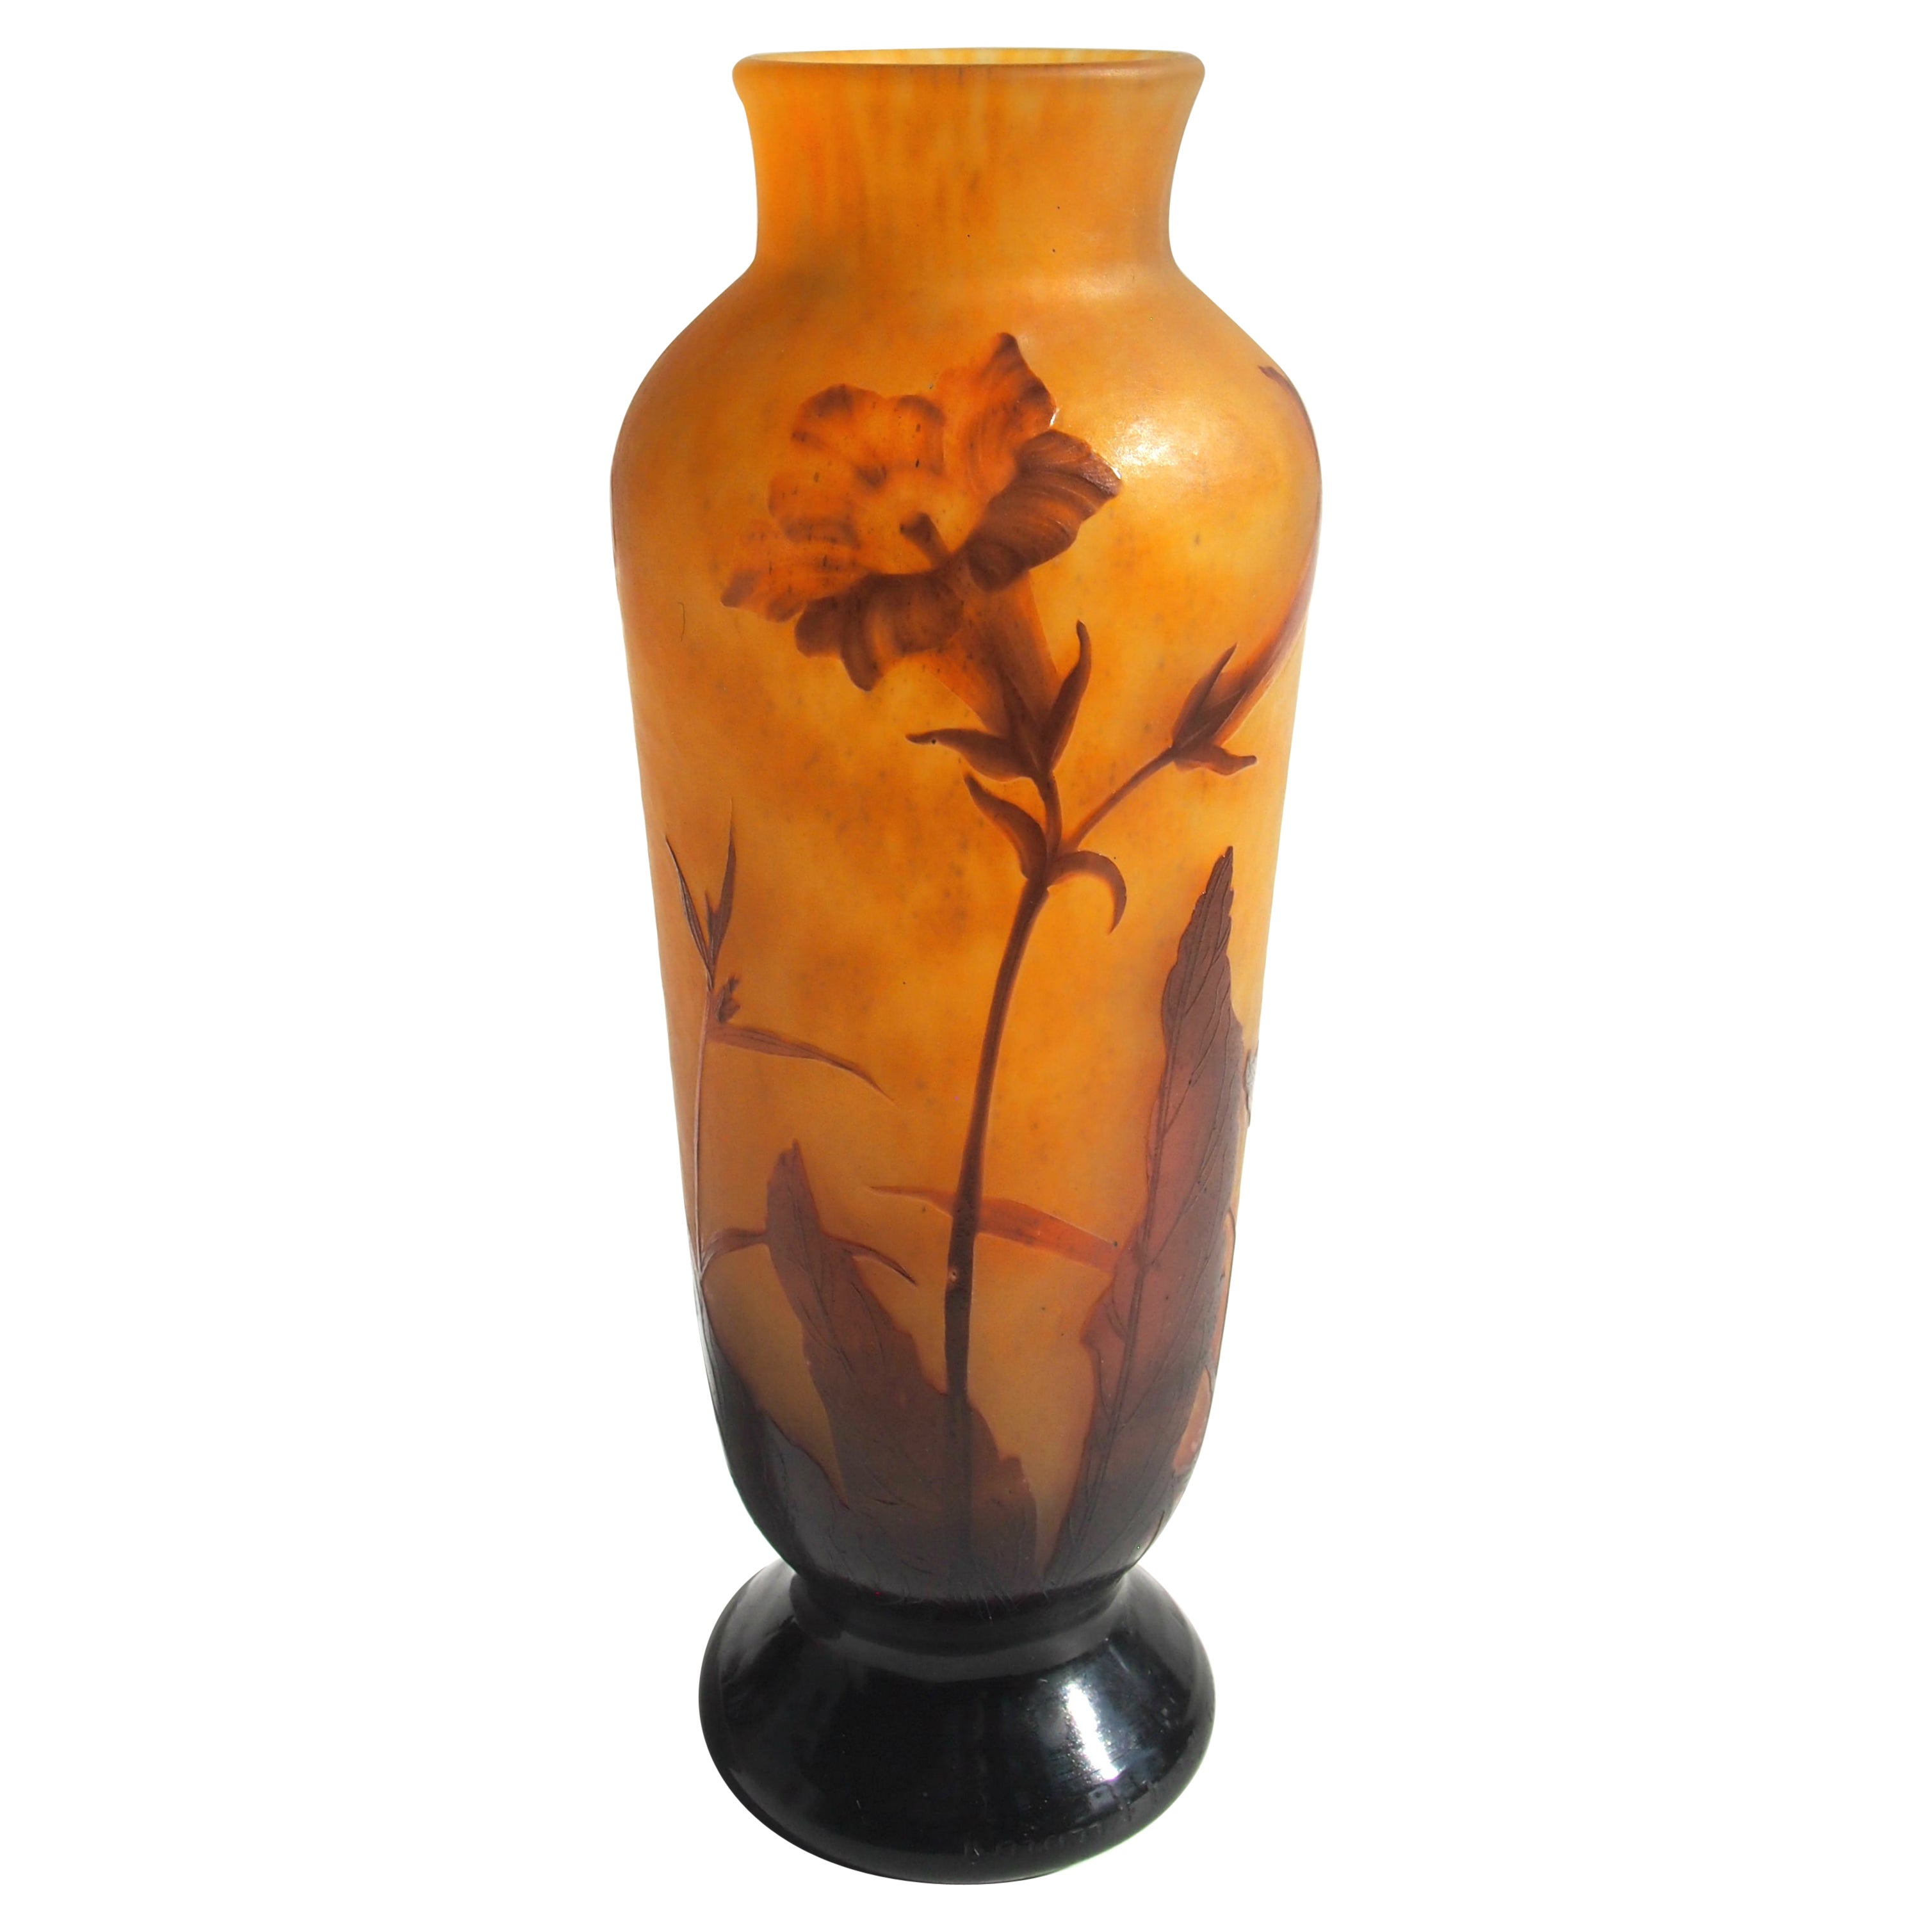 Nicotiana-Vase aus geschnitztem Glas mit Kamee und Rad im französischen Art nouveau-Stil, um 1900